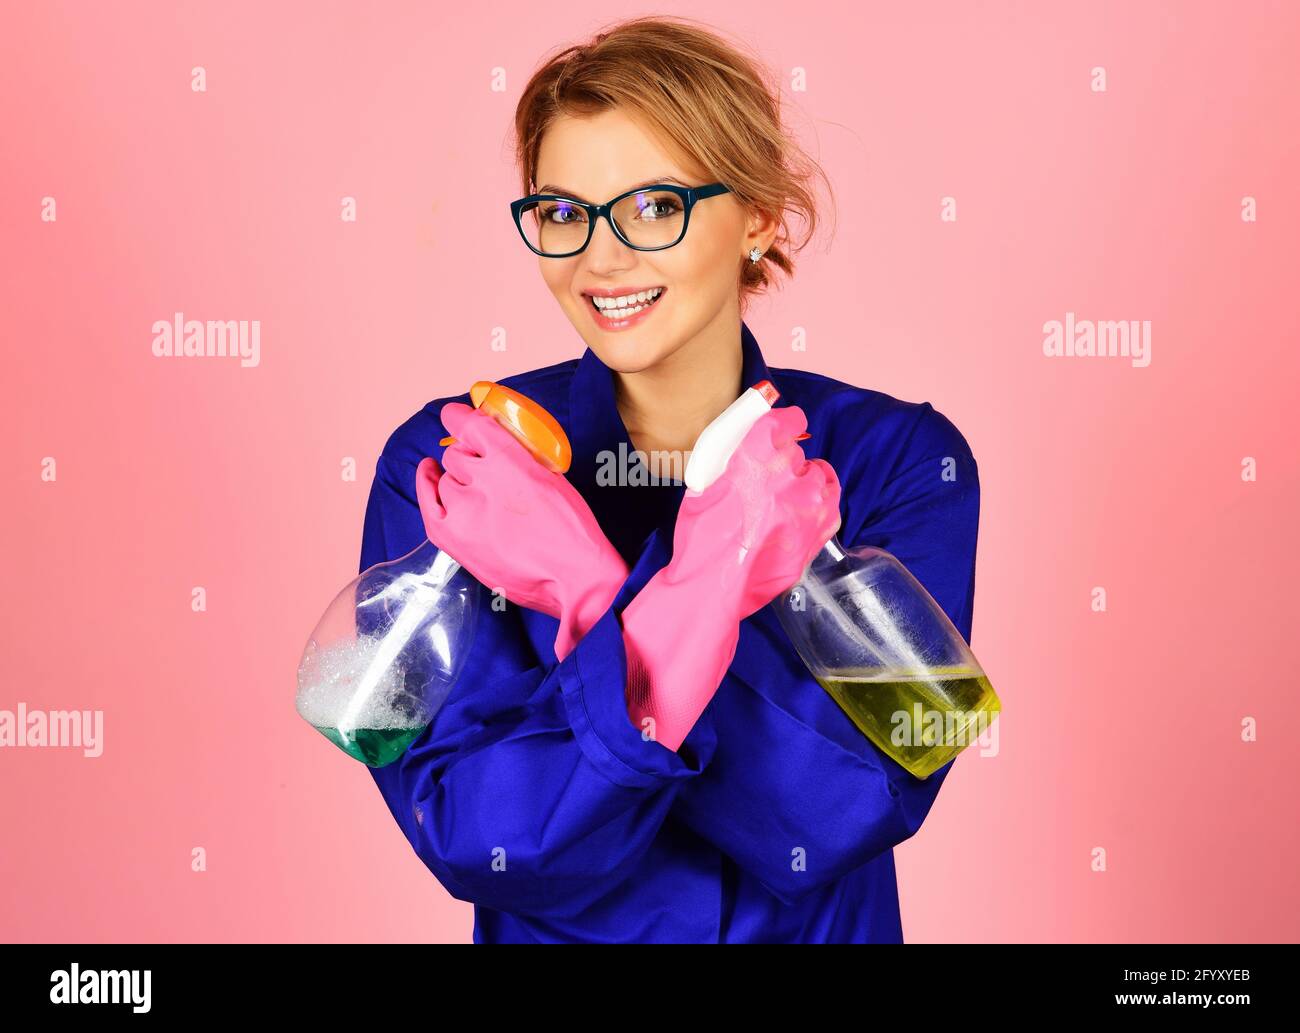 Glückliche Frau in Uniform und Gummihandschuhen mit Reinigungsspray. Professioneller Reinigungsservice. Stockfoto